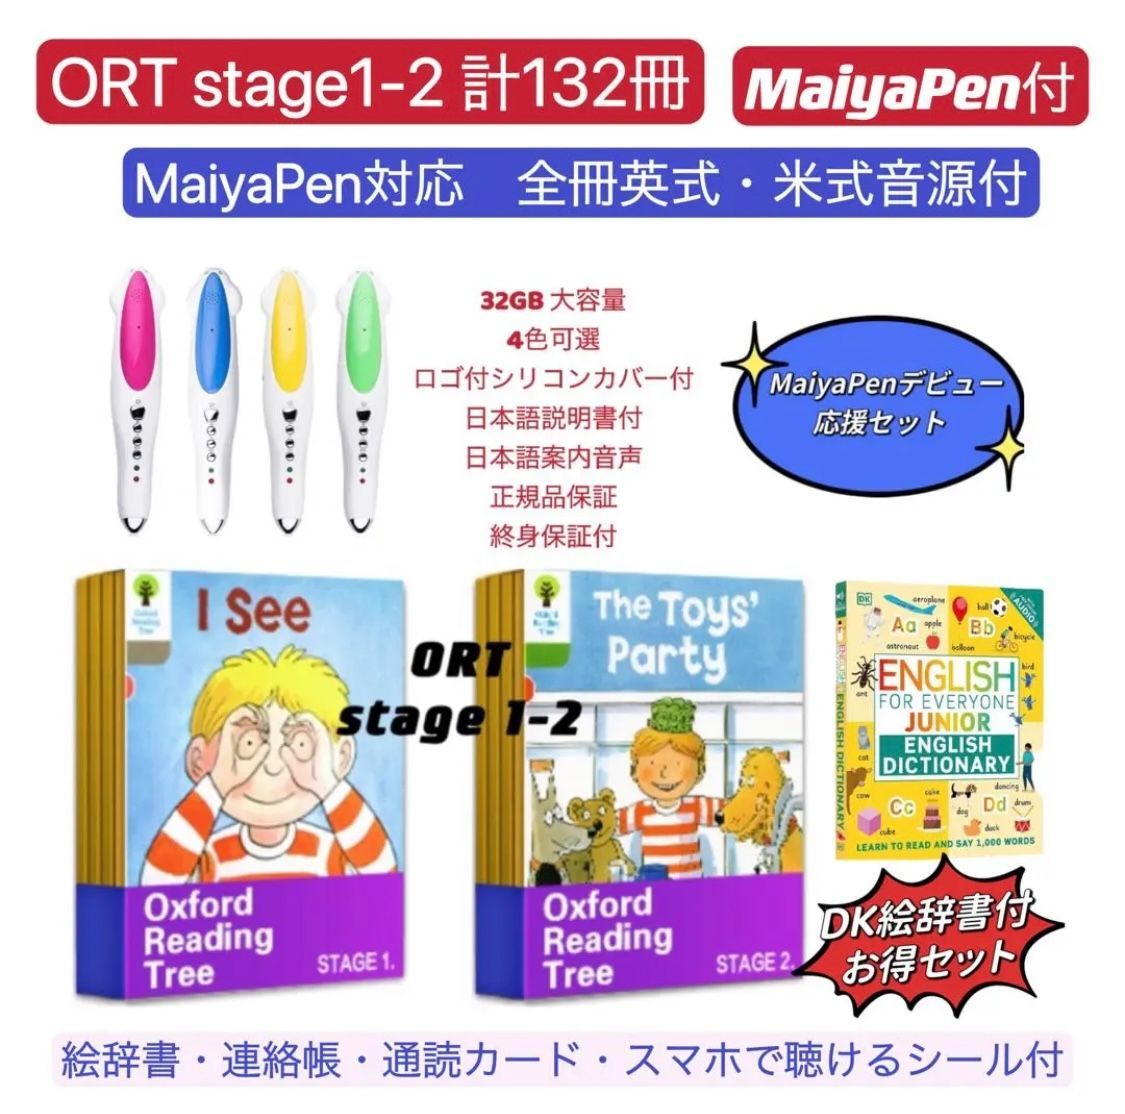 ORT stage1-2 liao絵本 maiyapen付 オックスフォード